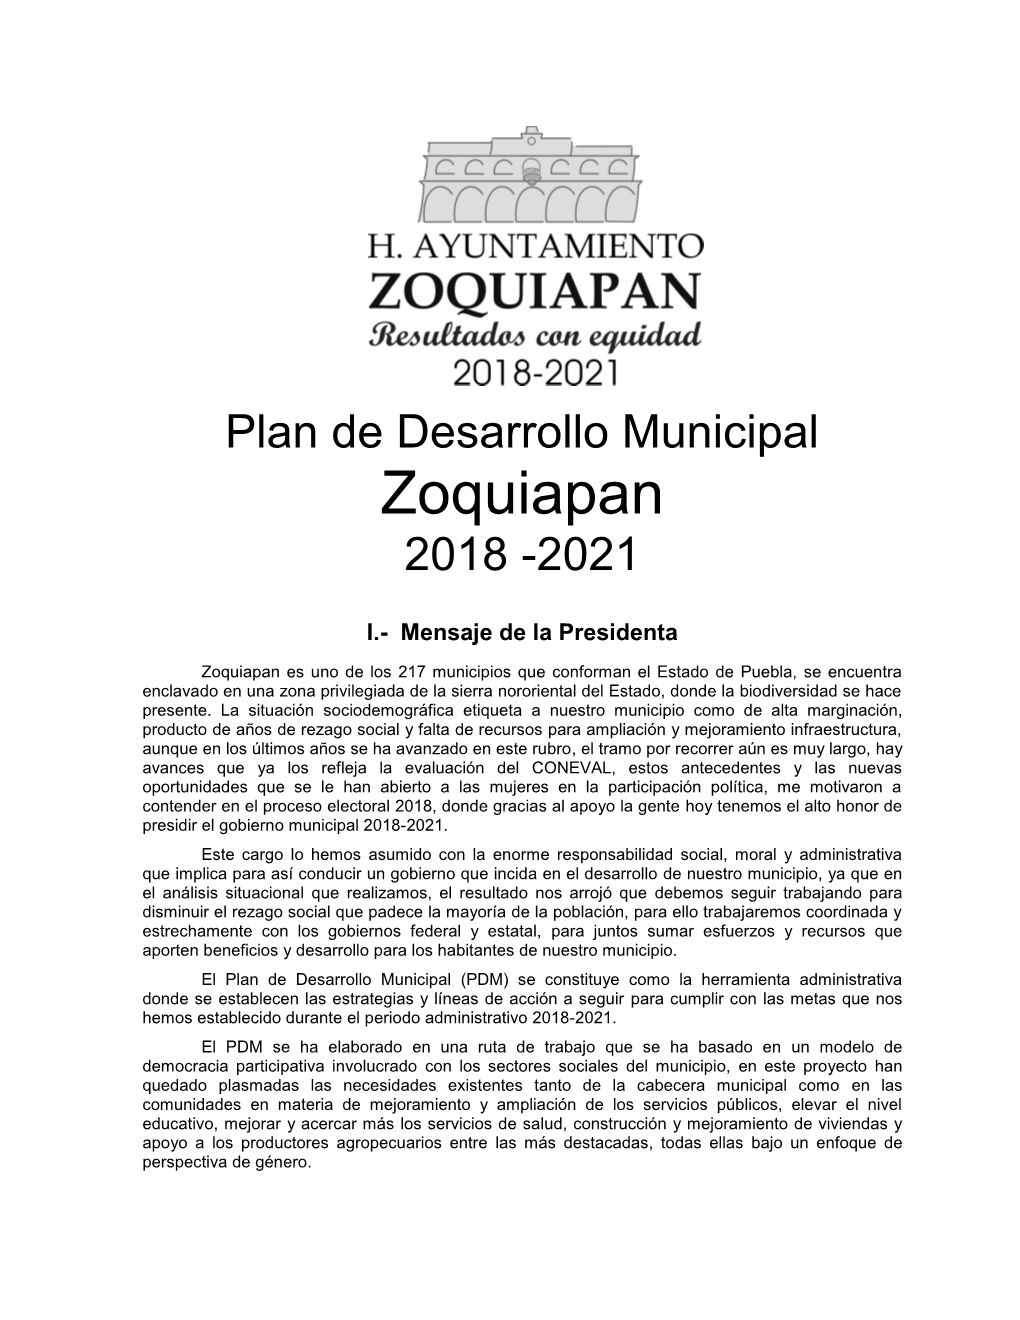 Zoquiapan 2018 -2021